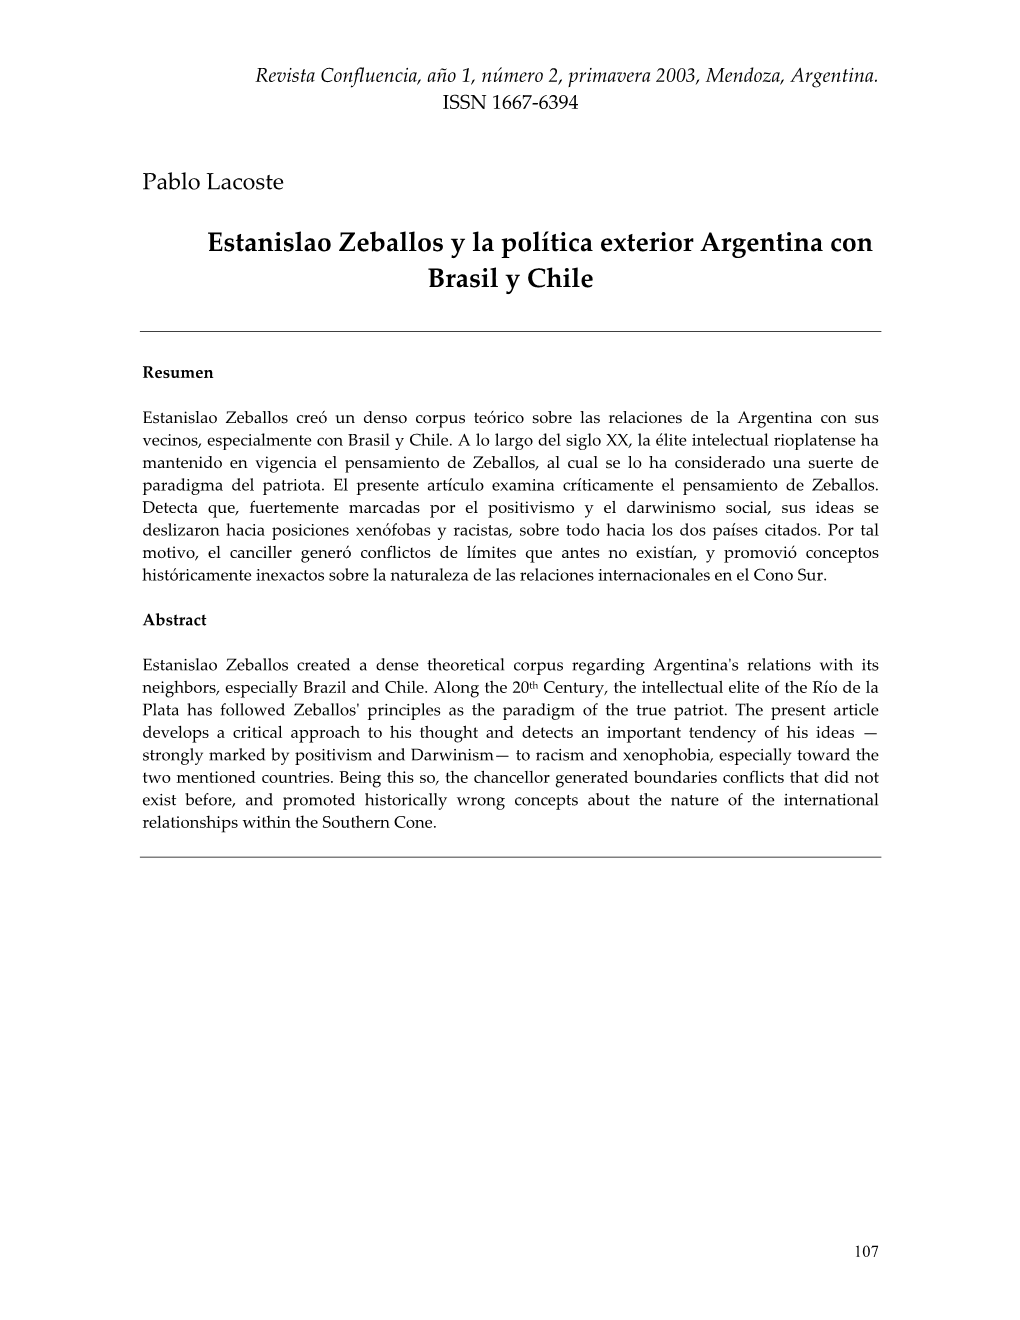 ESTANISLAO ZEBALLOS Y LA POLTICA EXTERIOR ARGENTINA CON BRASIL Y CHILE